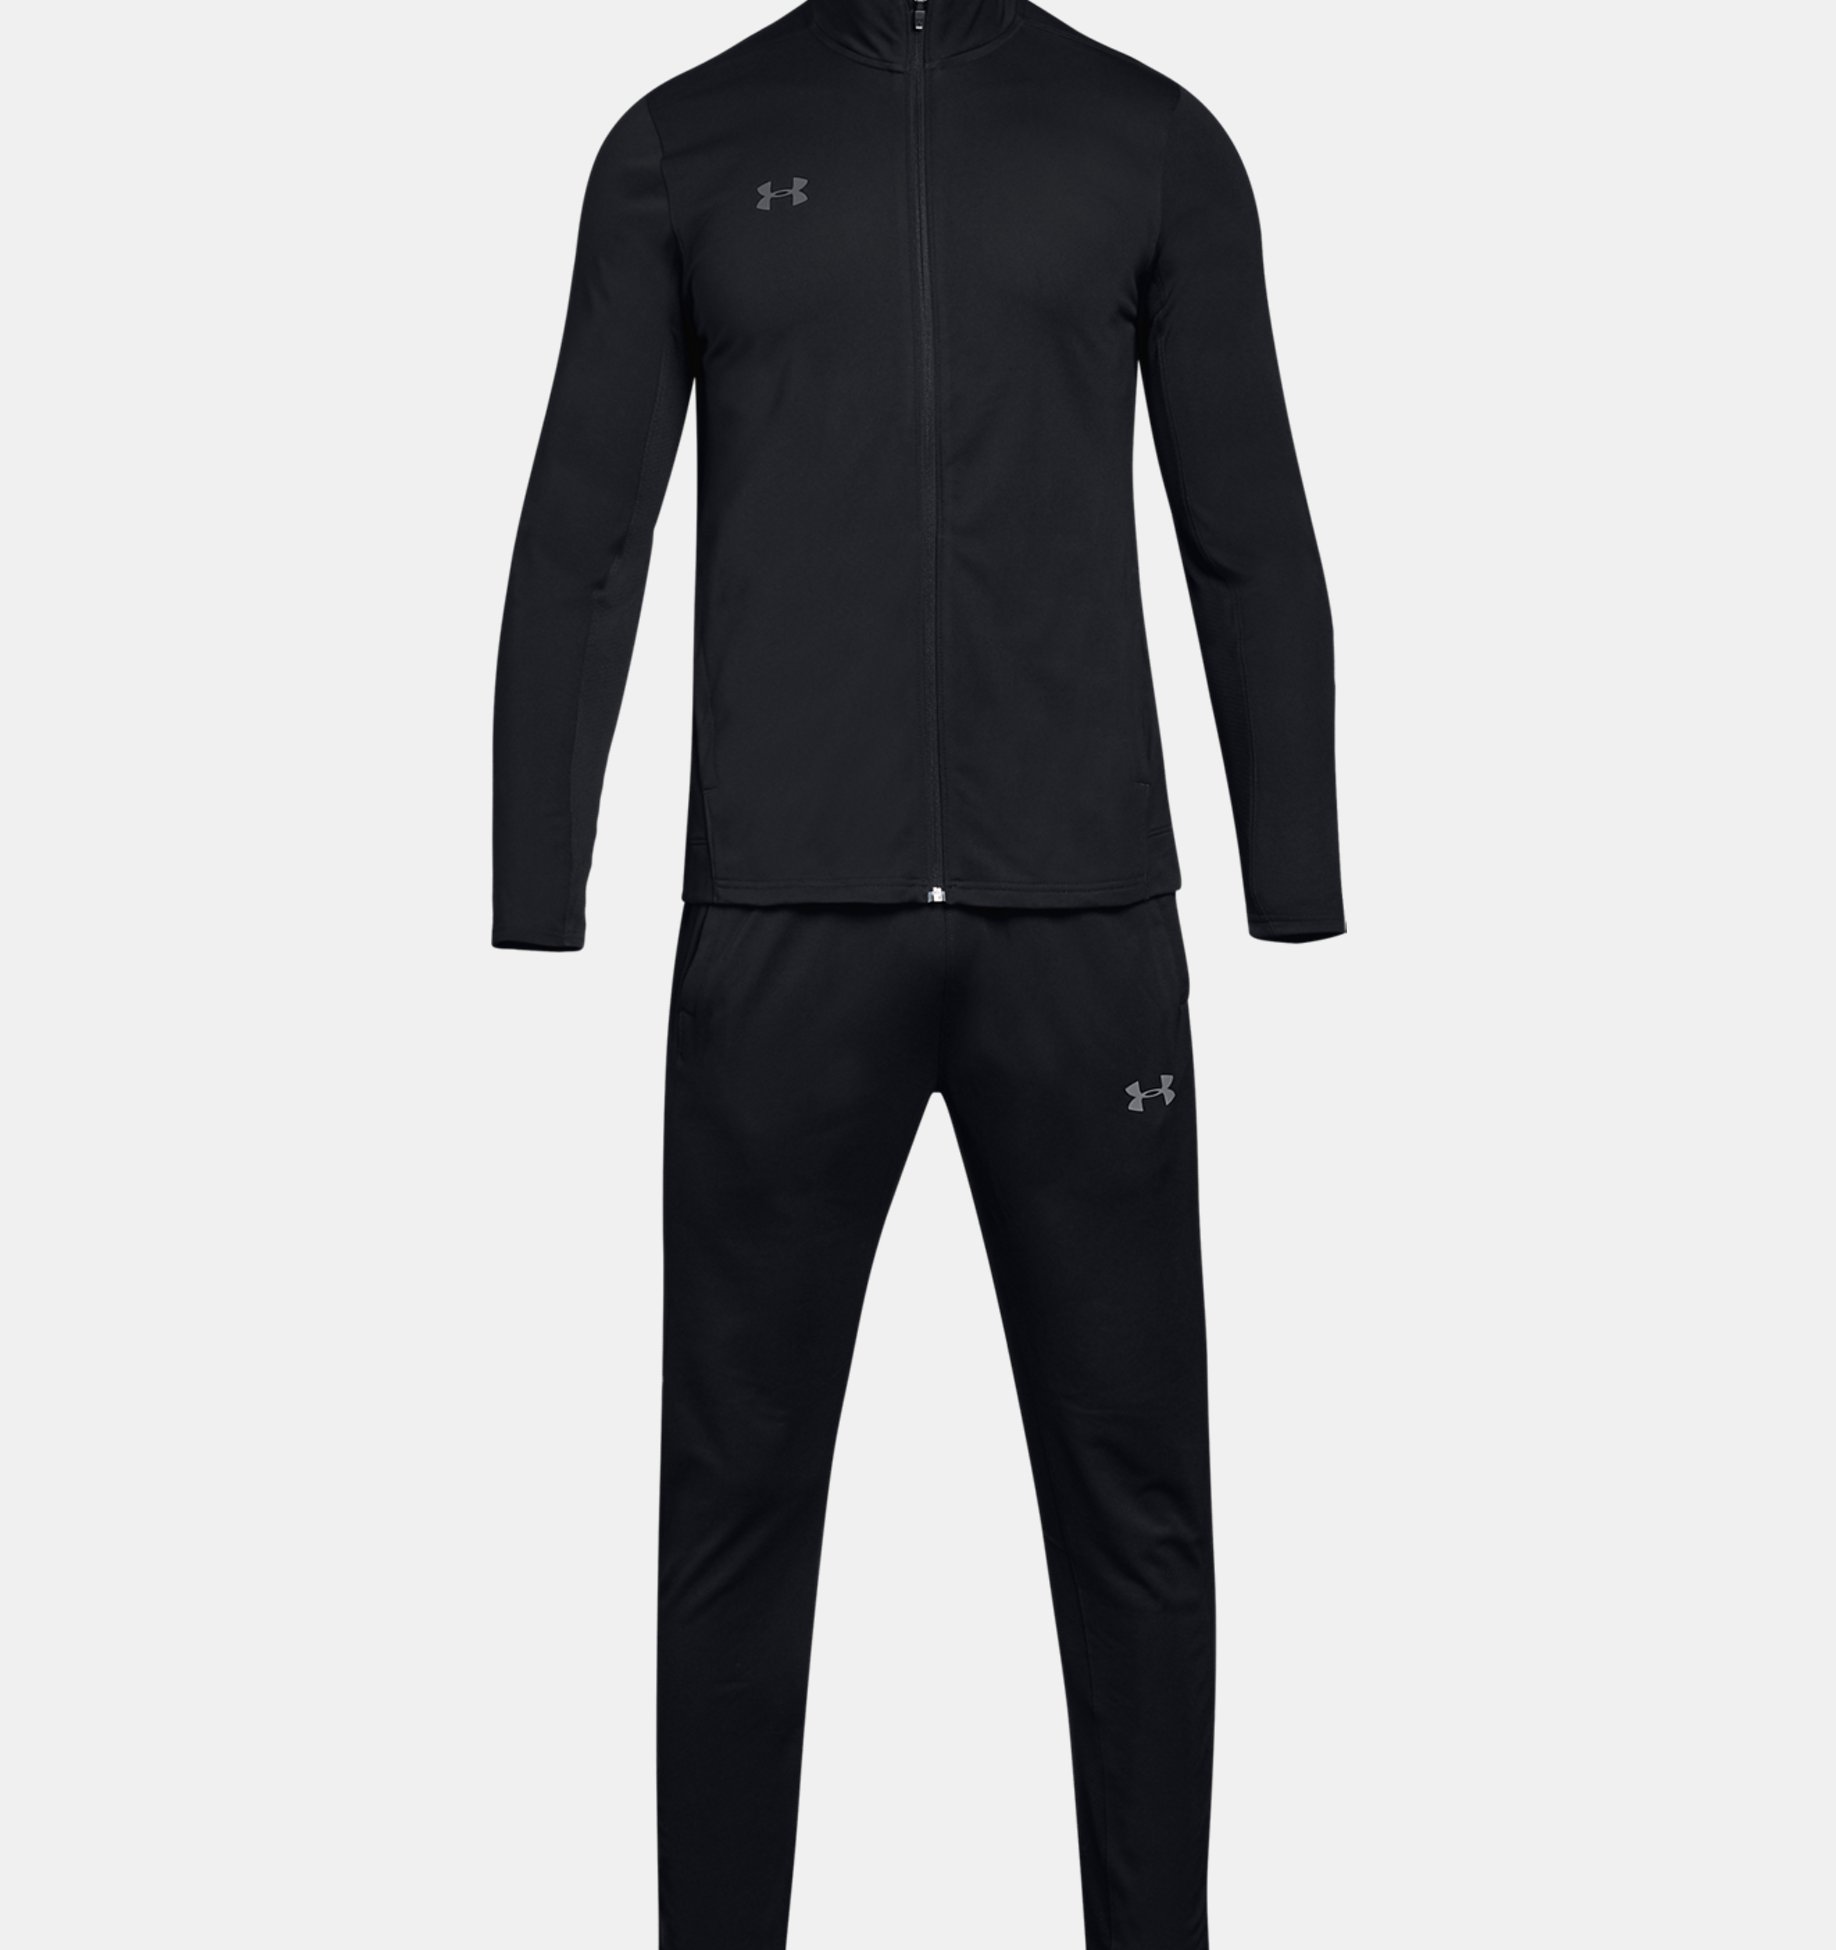 Tenue de sport avec pantalon et veste tenue de training complète pour homme Homme Visiter la boutique Under ArmourUnder Armour Challenger II Knit Warm-Up 